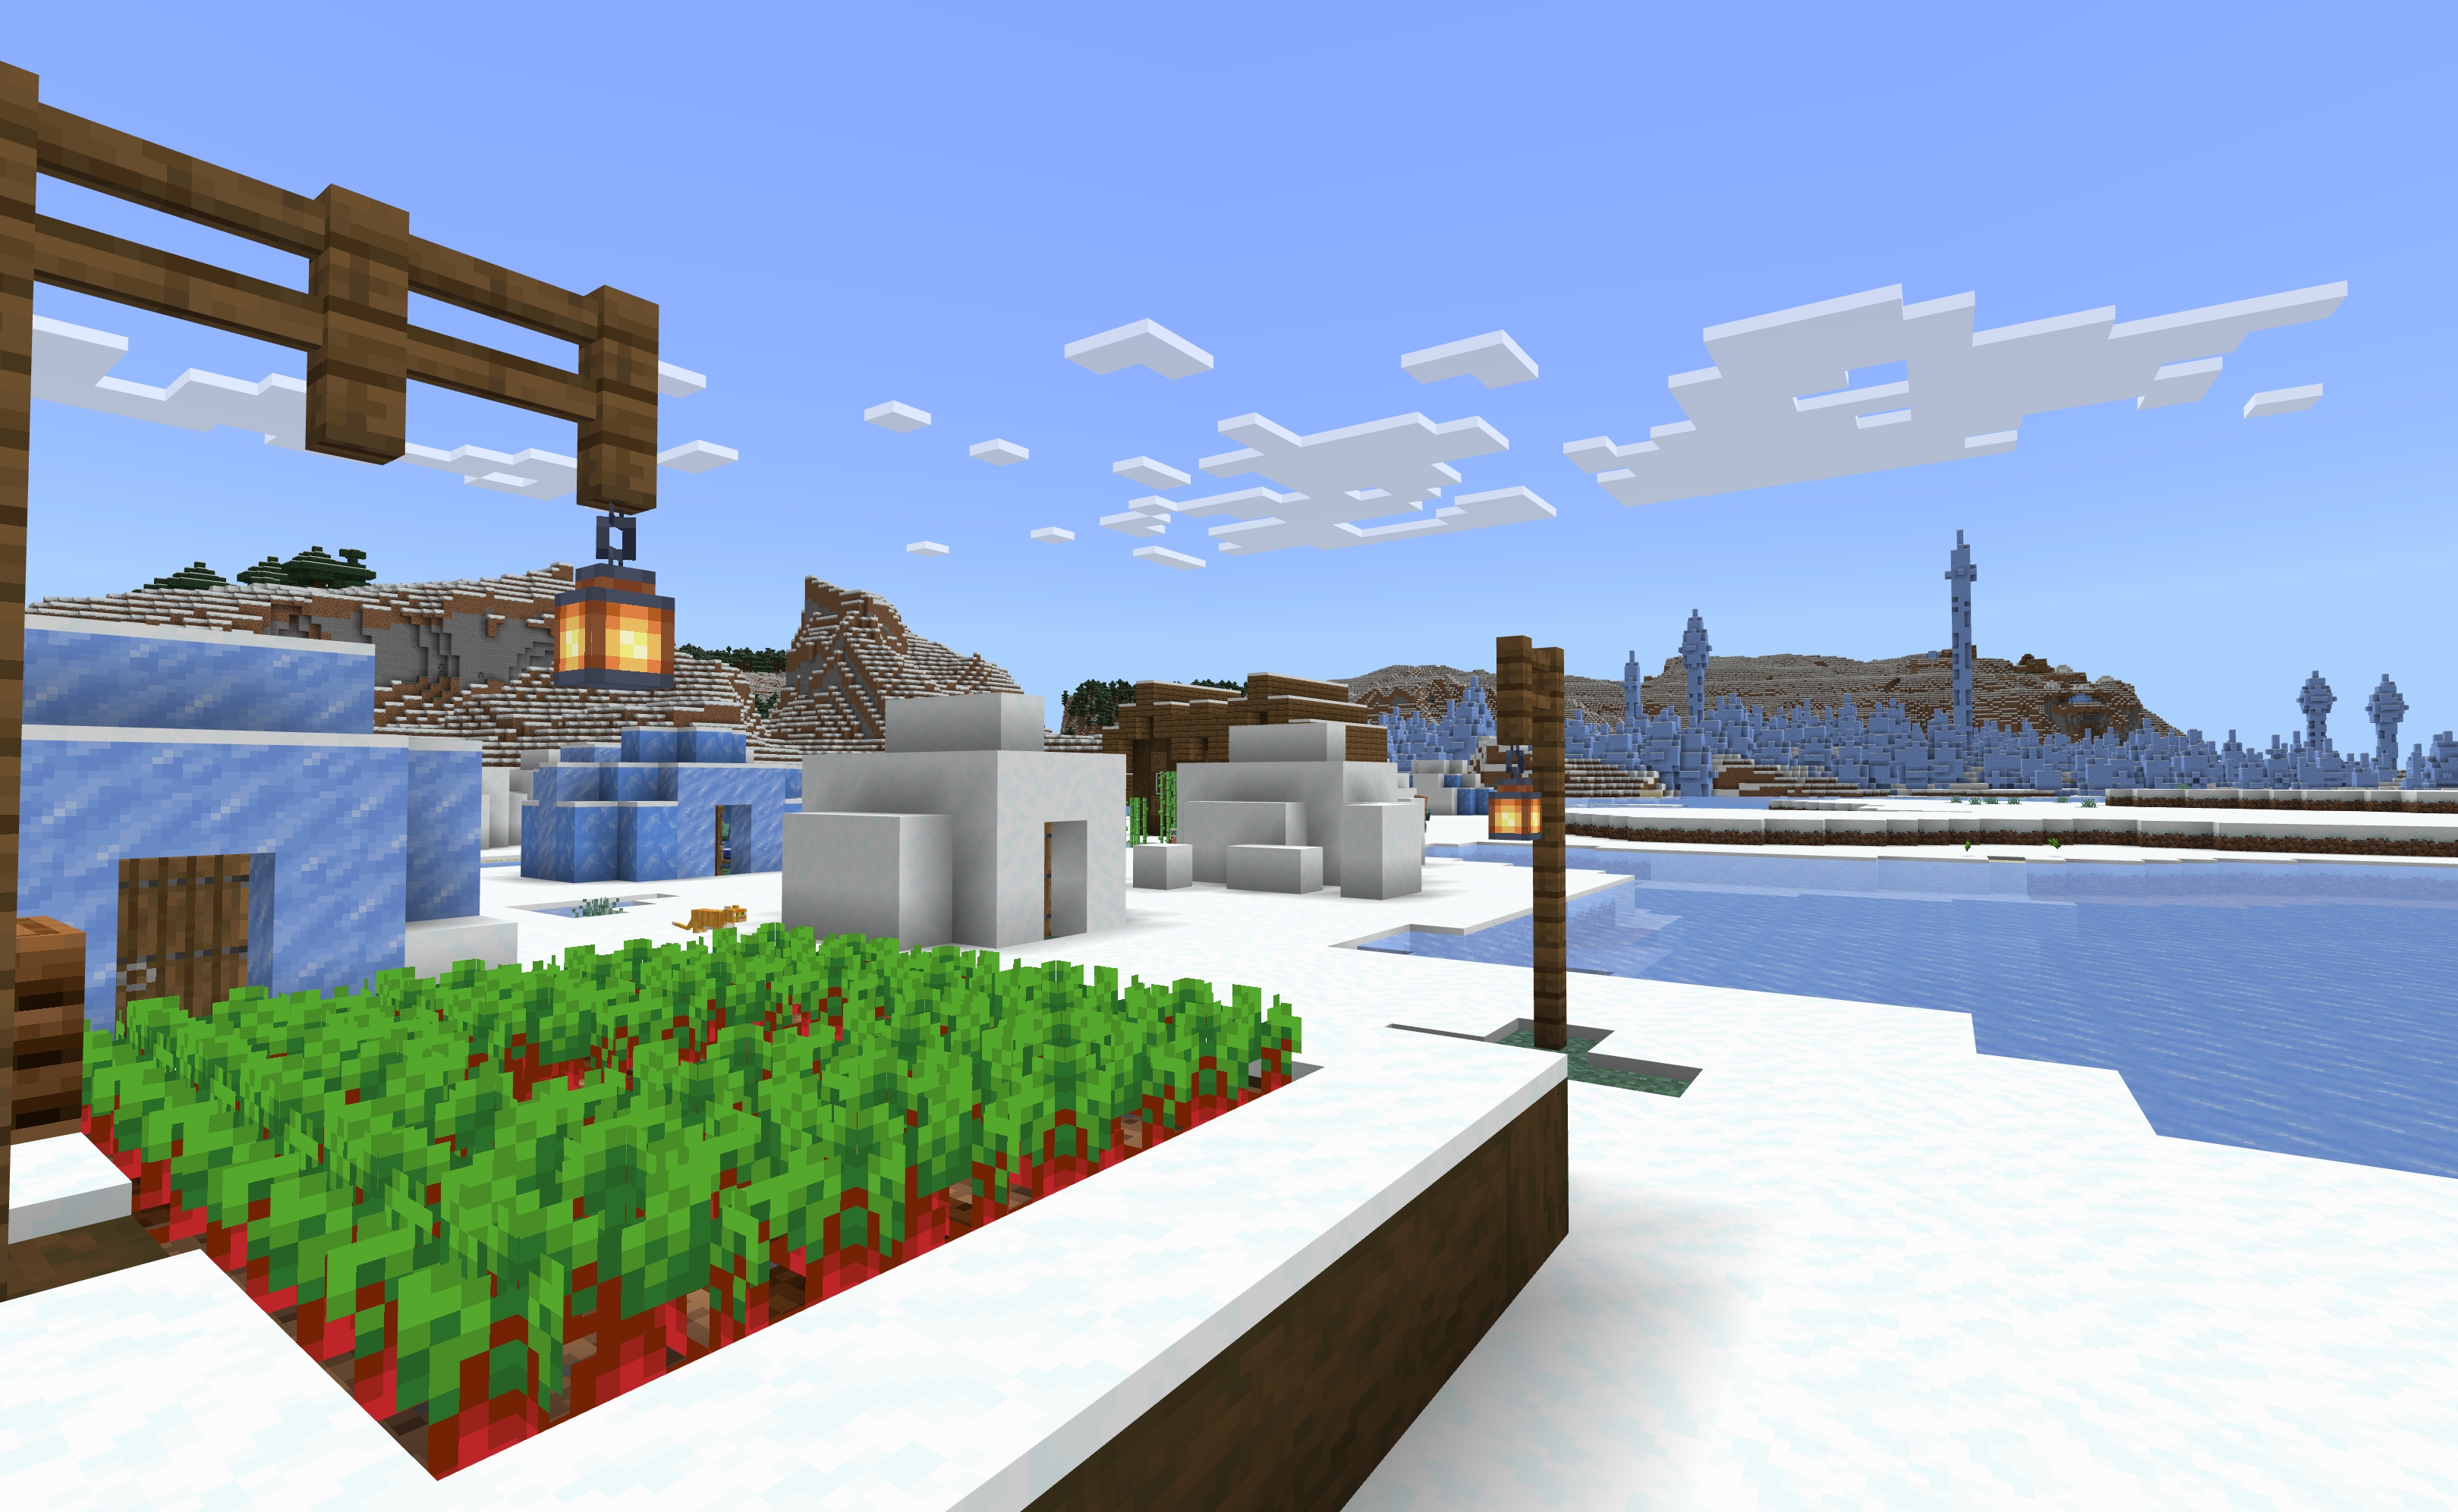 A Snowy Minecraft Village